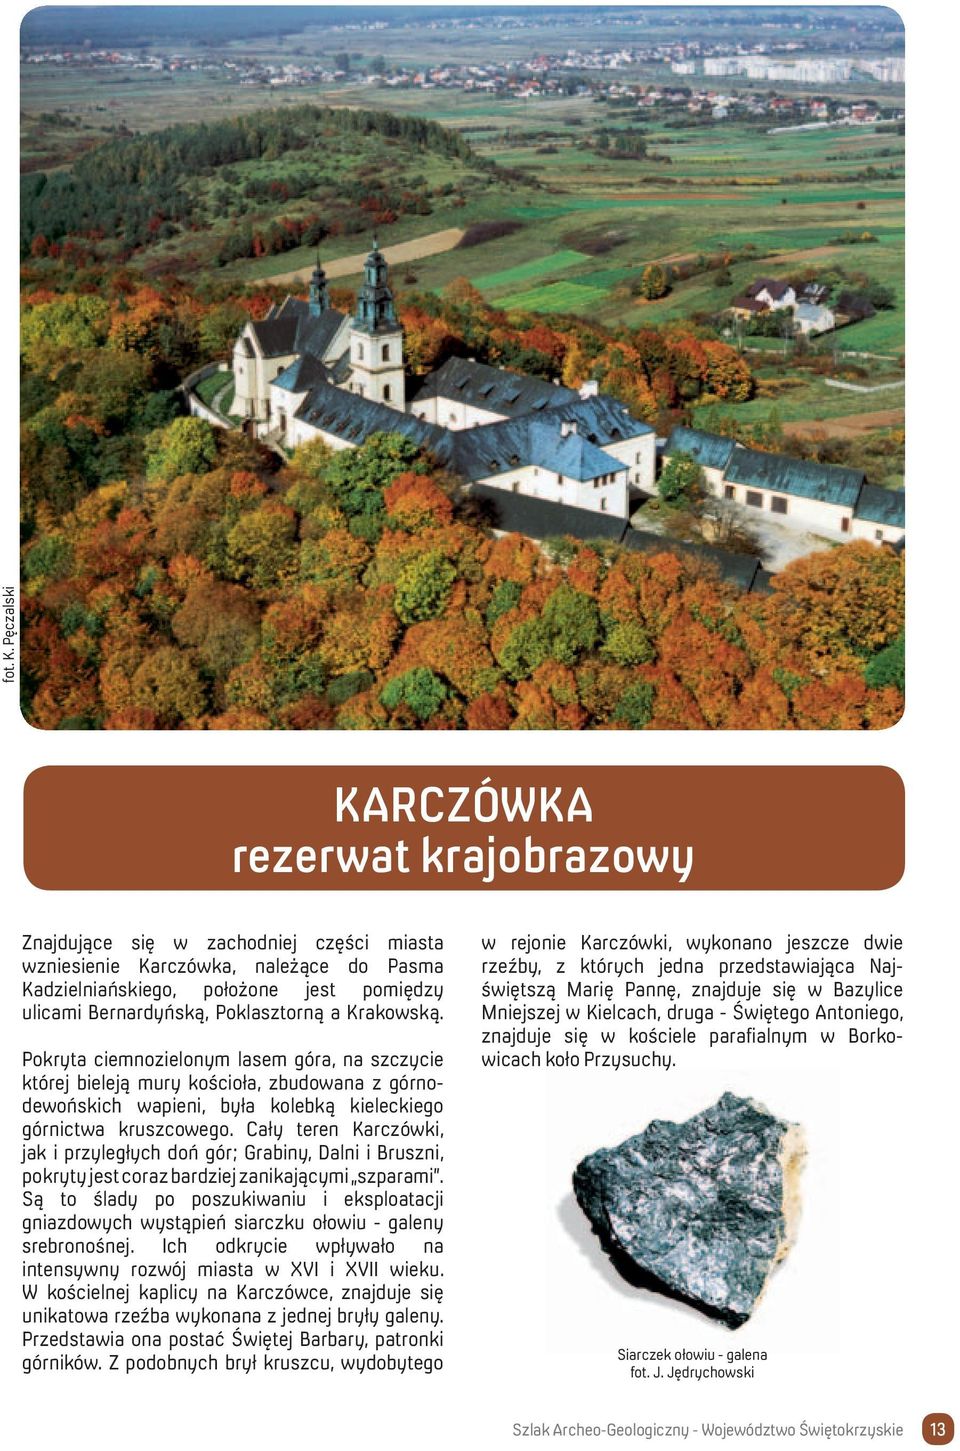 Poklasztorną a Krakowską. Pokryta ciemnozielonym lasem góra, na szczycie której bieleją mury kościoła, zbudowana z górnodewońskich wapieni, była kolebką kieleckiego górnictwa kruszcowego.